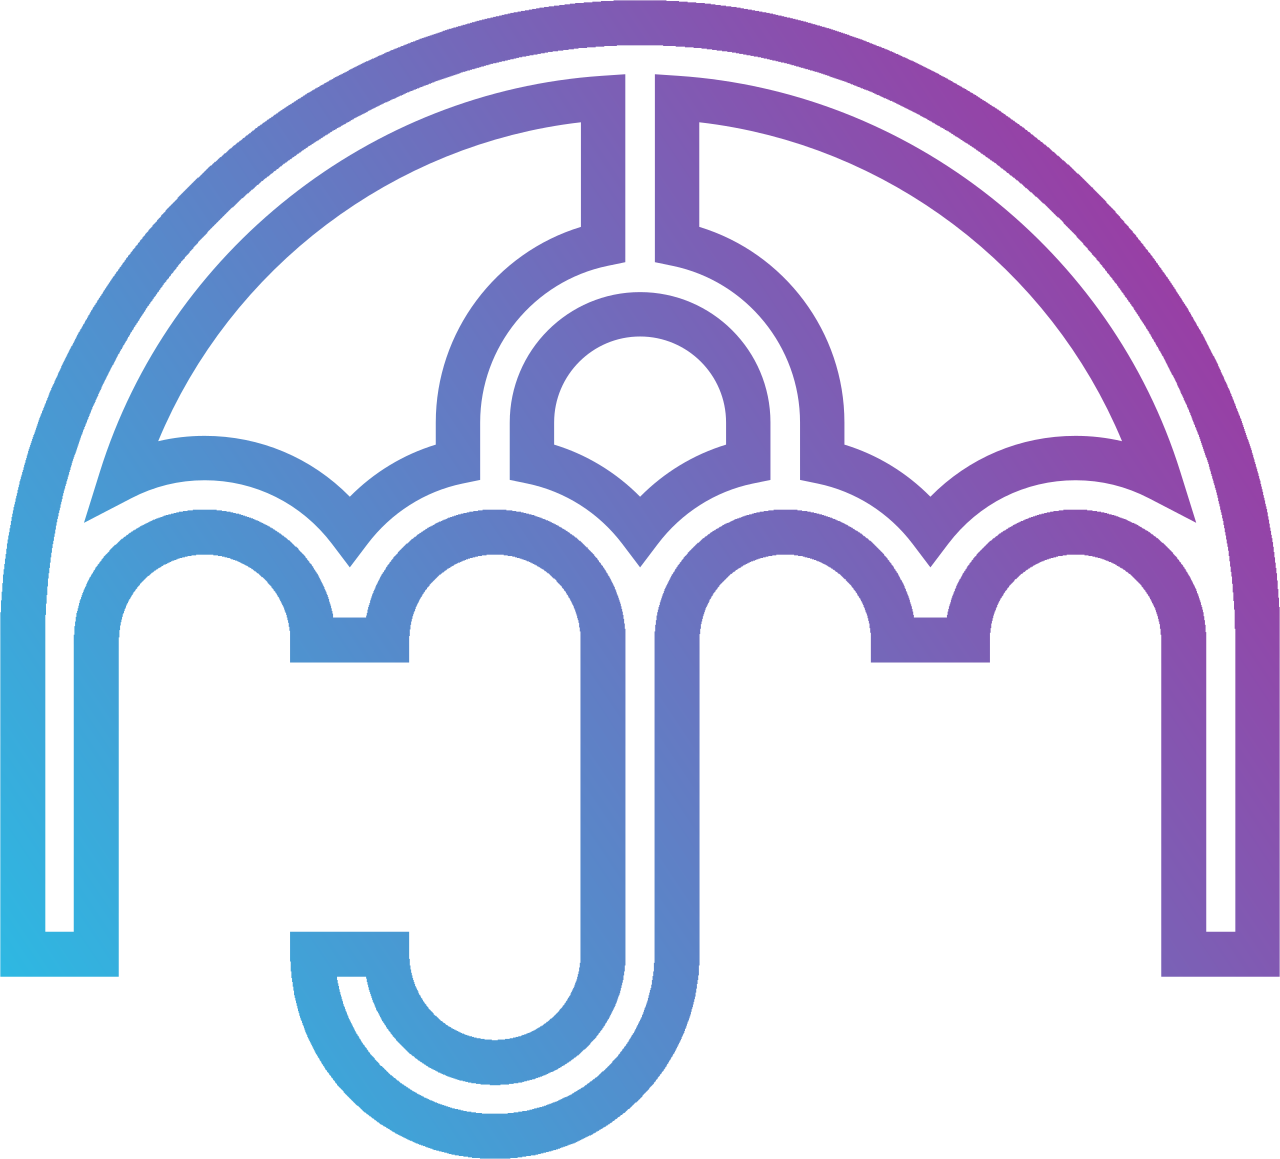 Jones's logo